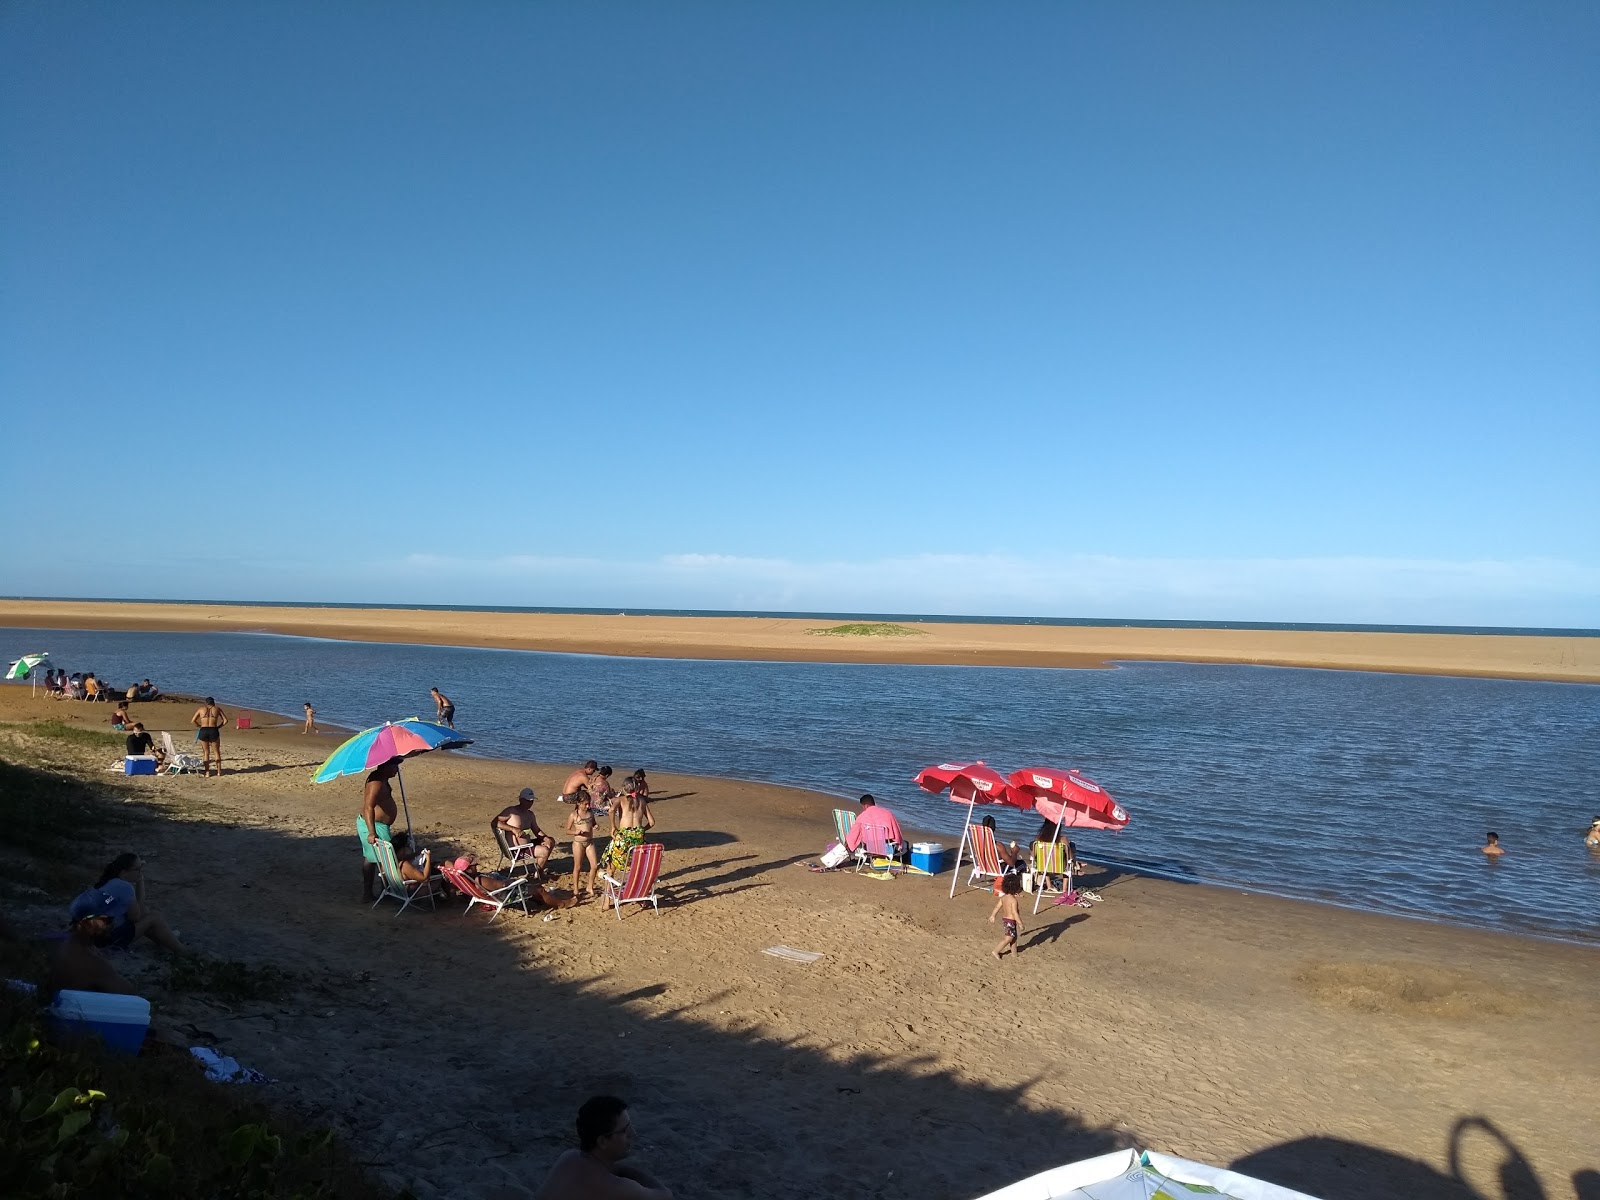 乌鲁苏夸拉海滩的照片 带有碧绿色纯水表面